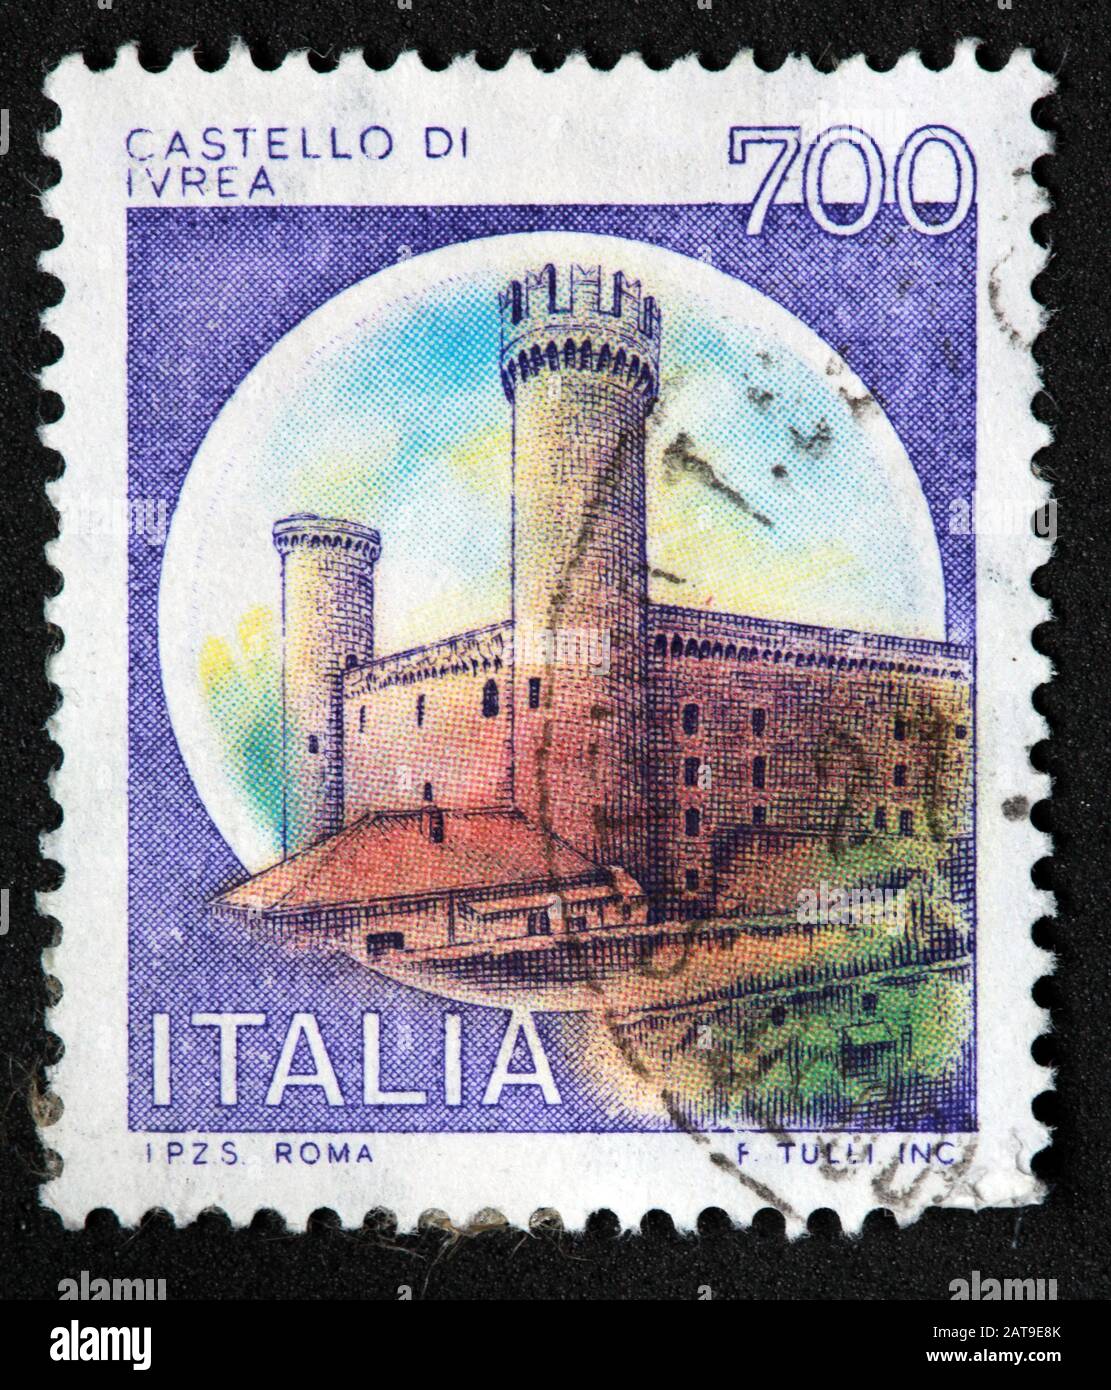 Timbre italien, cachet poste Italia utilisé et francé, châteaux d'Italie, Italia 700 lire Castello Di Ivrea Banque D'Images